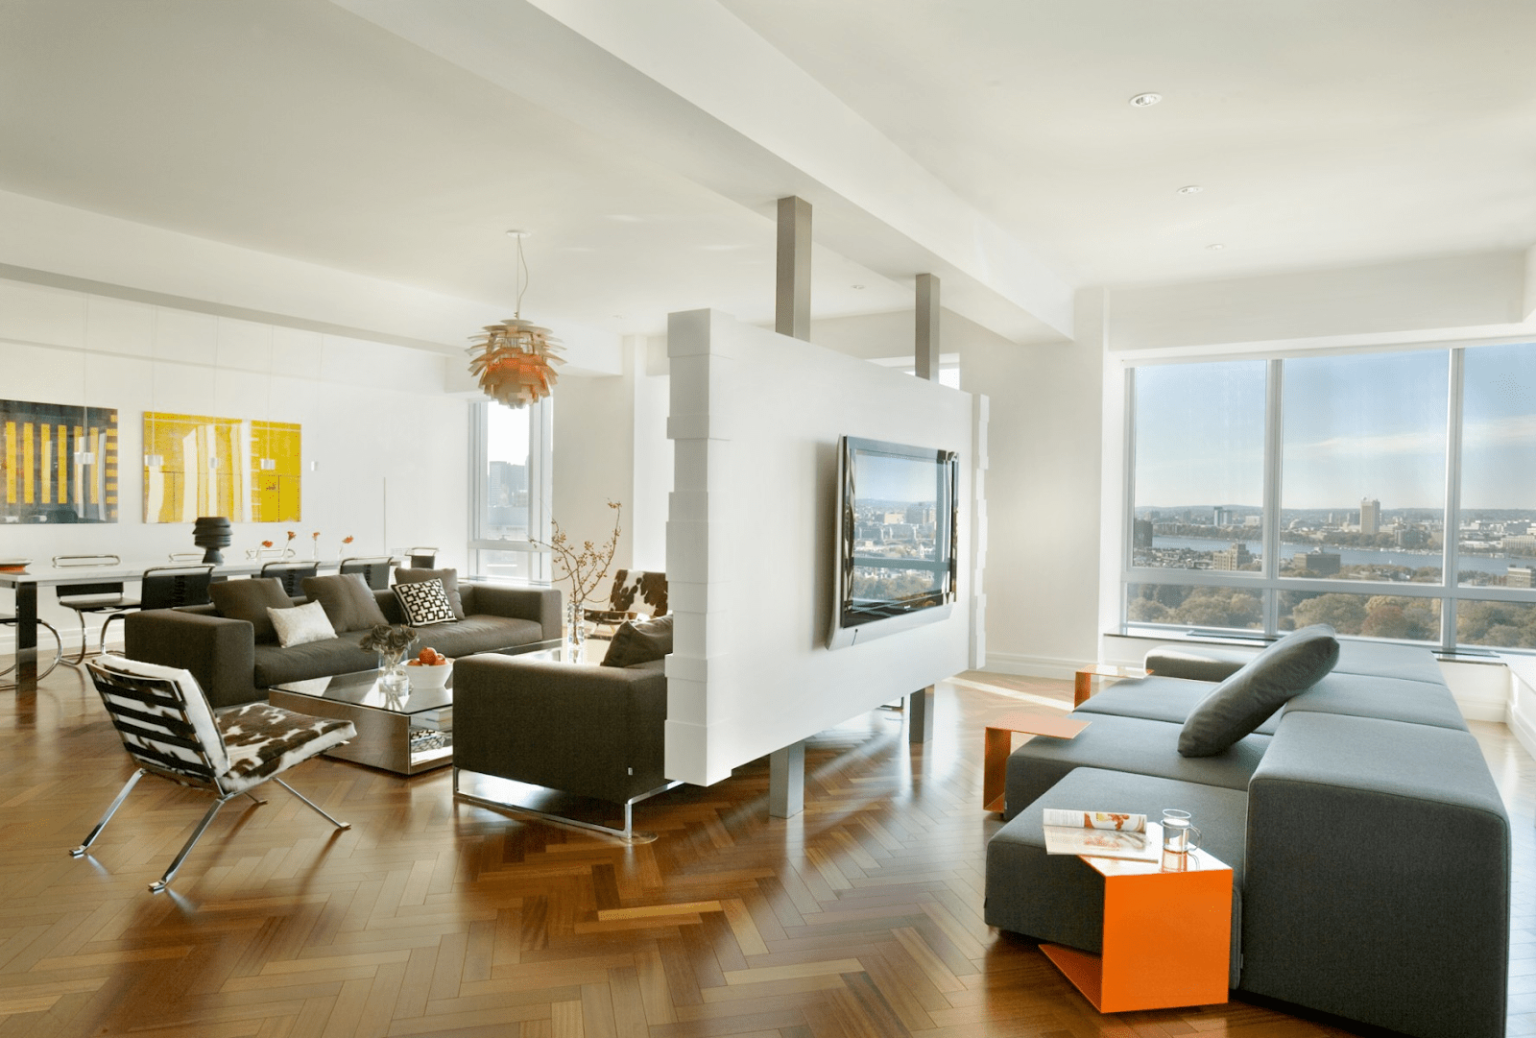 Vách ngăn thạch cao kiểu dáng này có thể làm cho phòng khách trông rộng hơn và sắc sảo hơn, đồng thời cung cấp một không gian riêng tư cho chủ nhà.